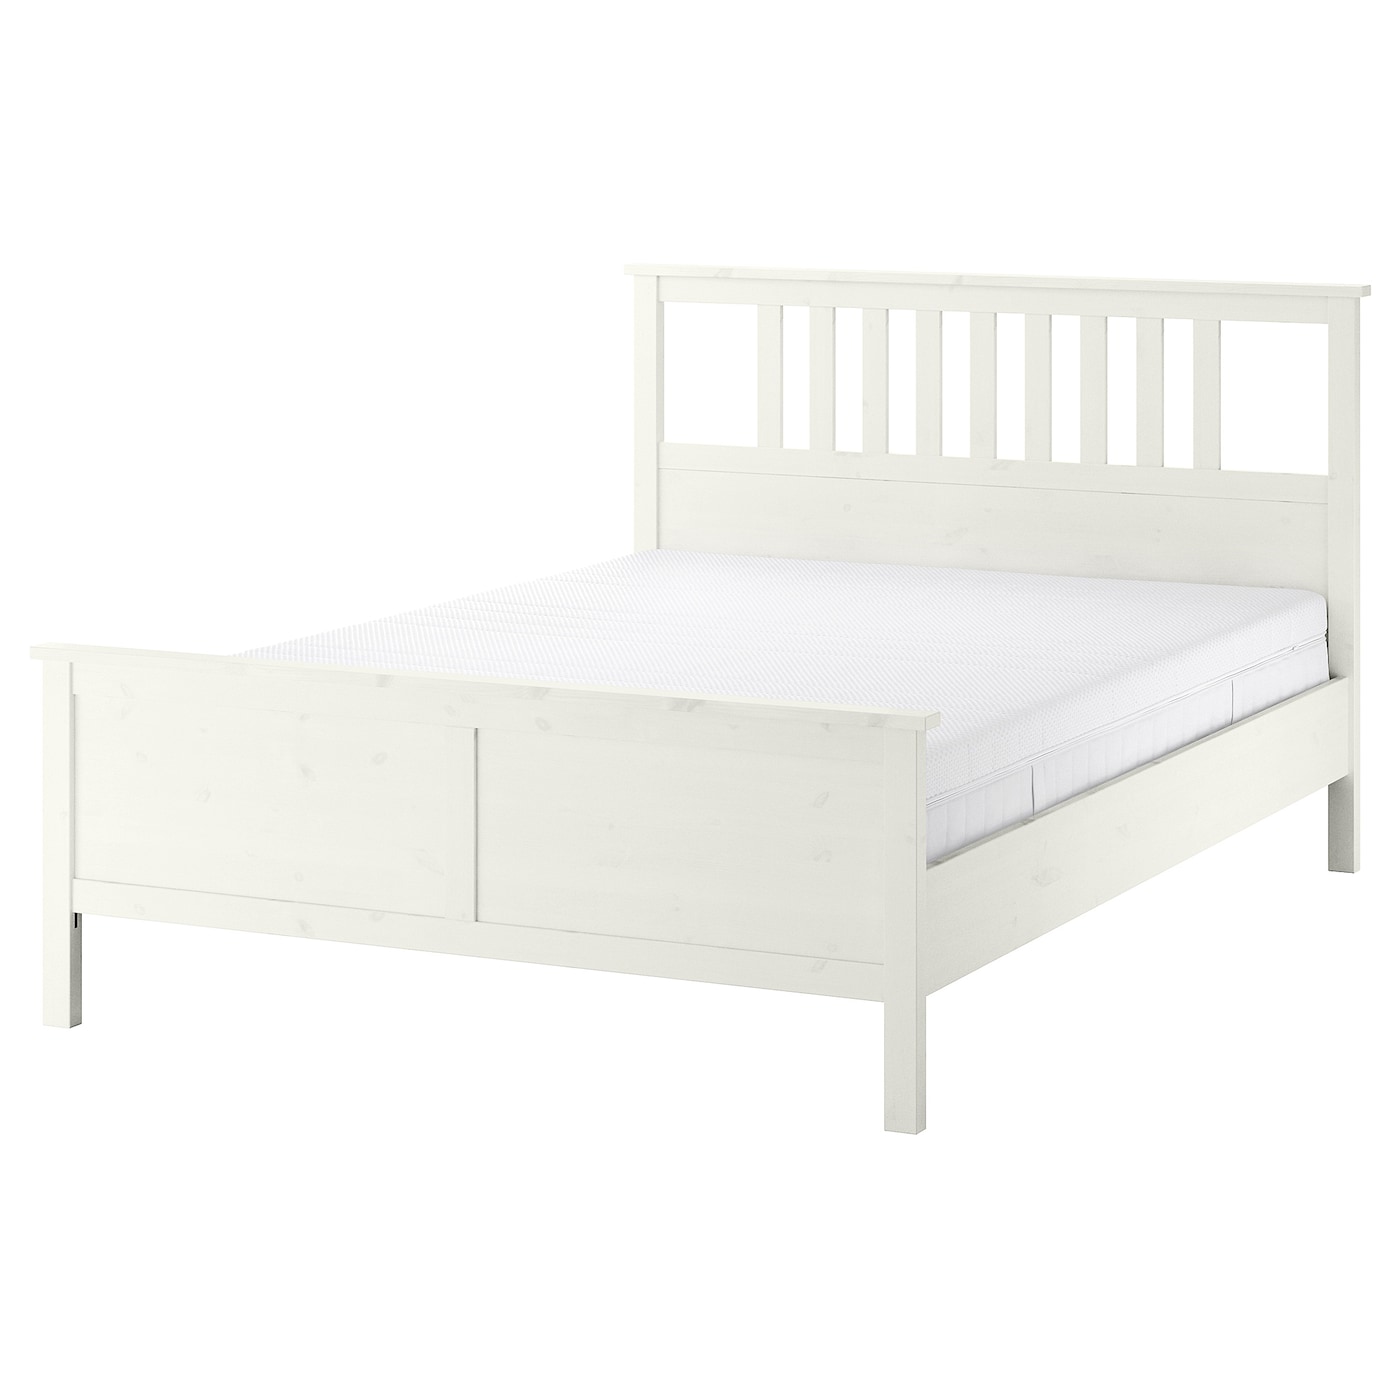 Каркас кровати - IKEA HEMNES, 200х160 см, матрас средне-жесткий, белый, ХЕМНЕС ИКЕА